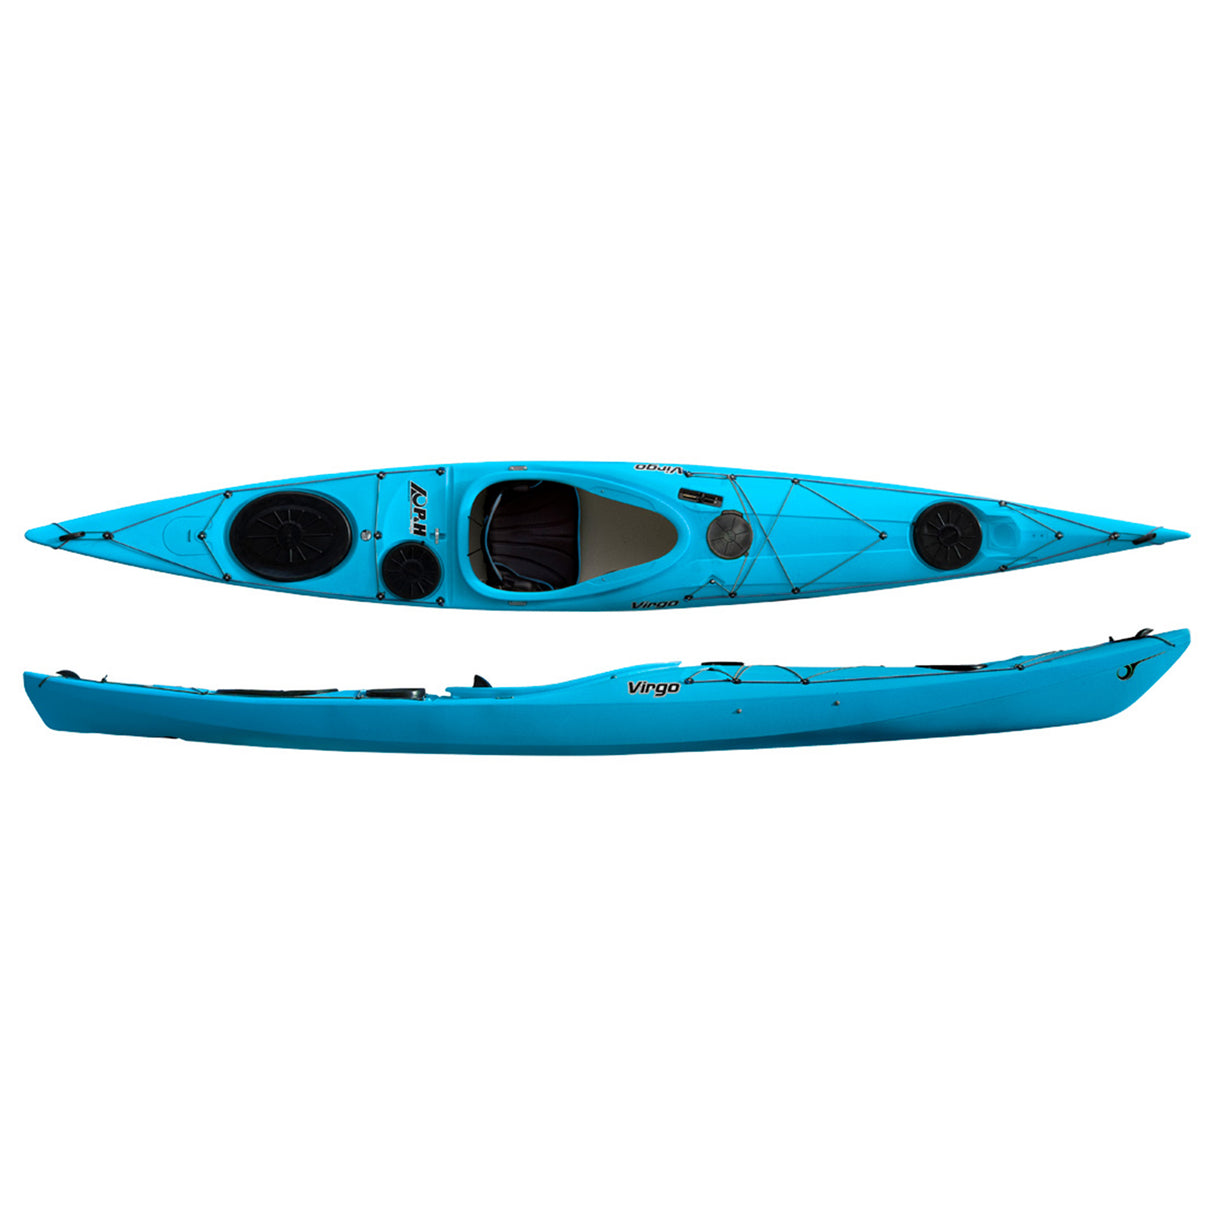 P&H Virgo HV Sea Kayak - Corelite X - 4 Hatches